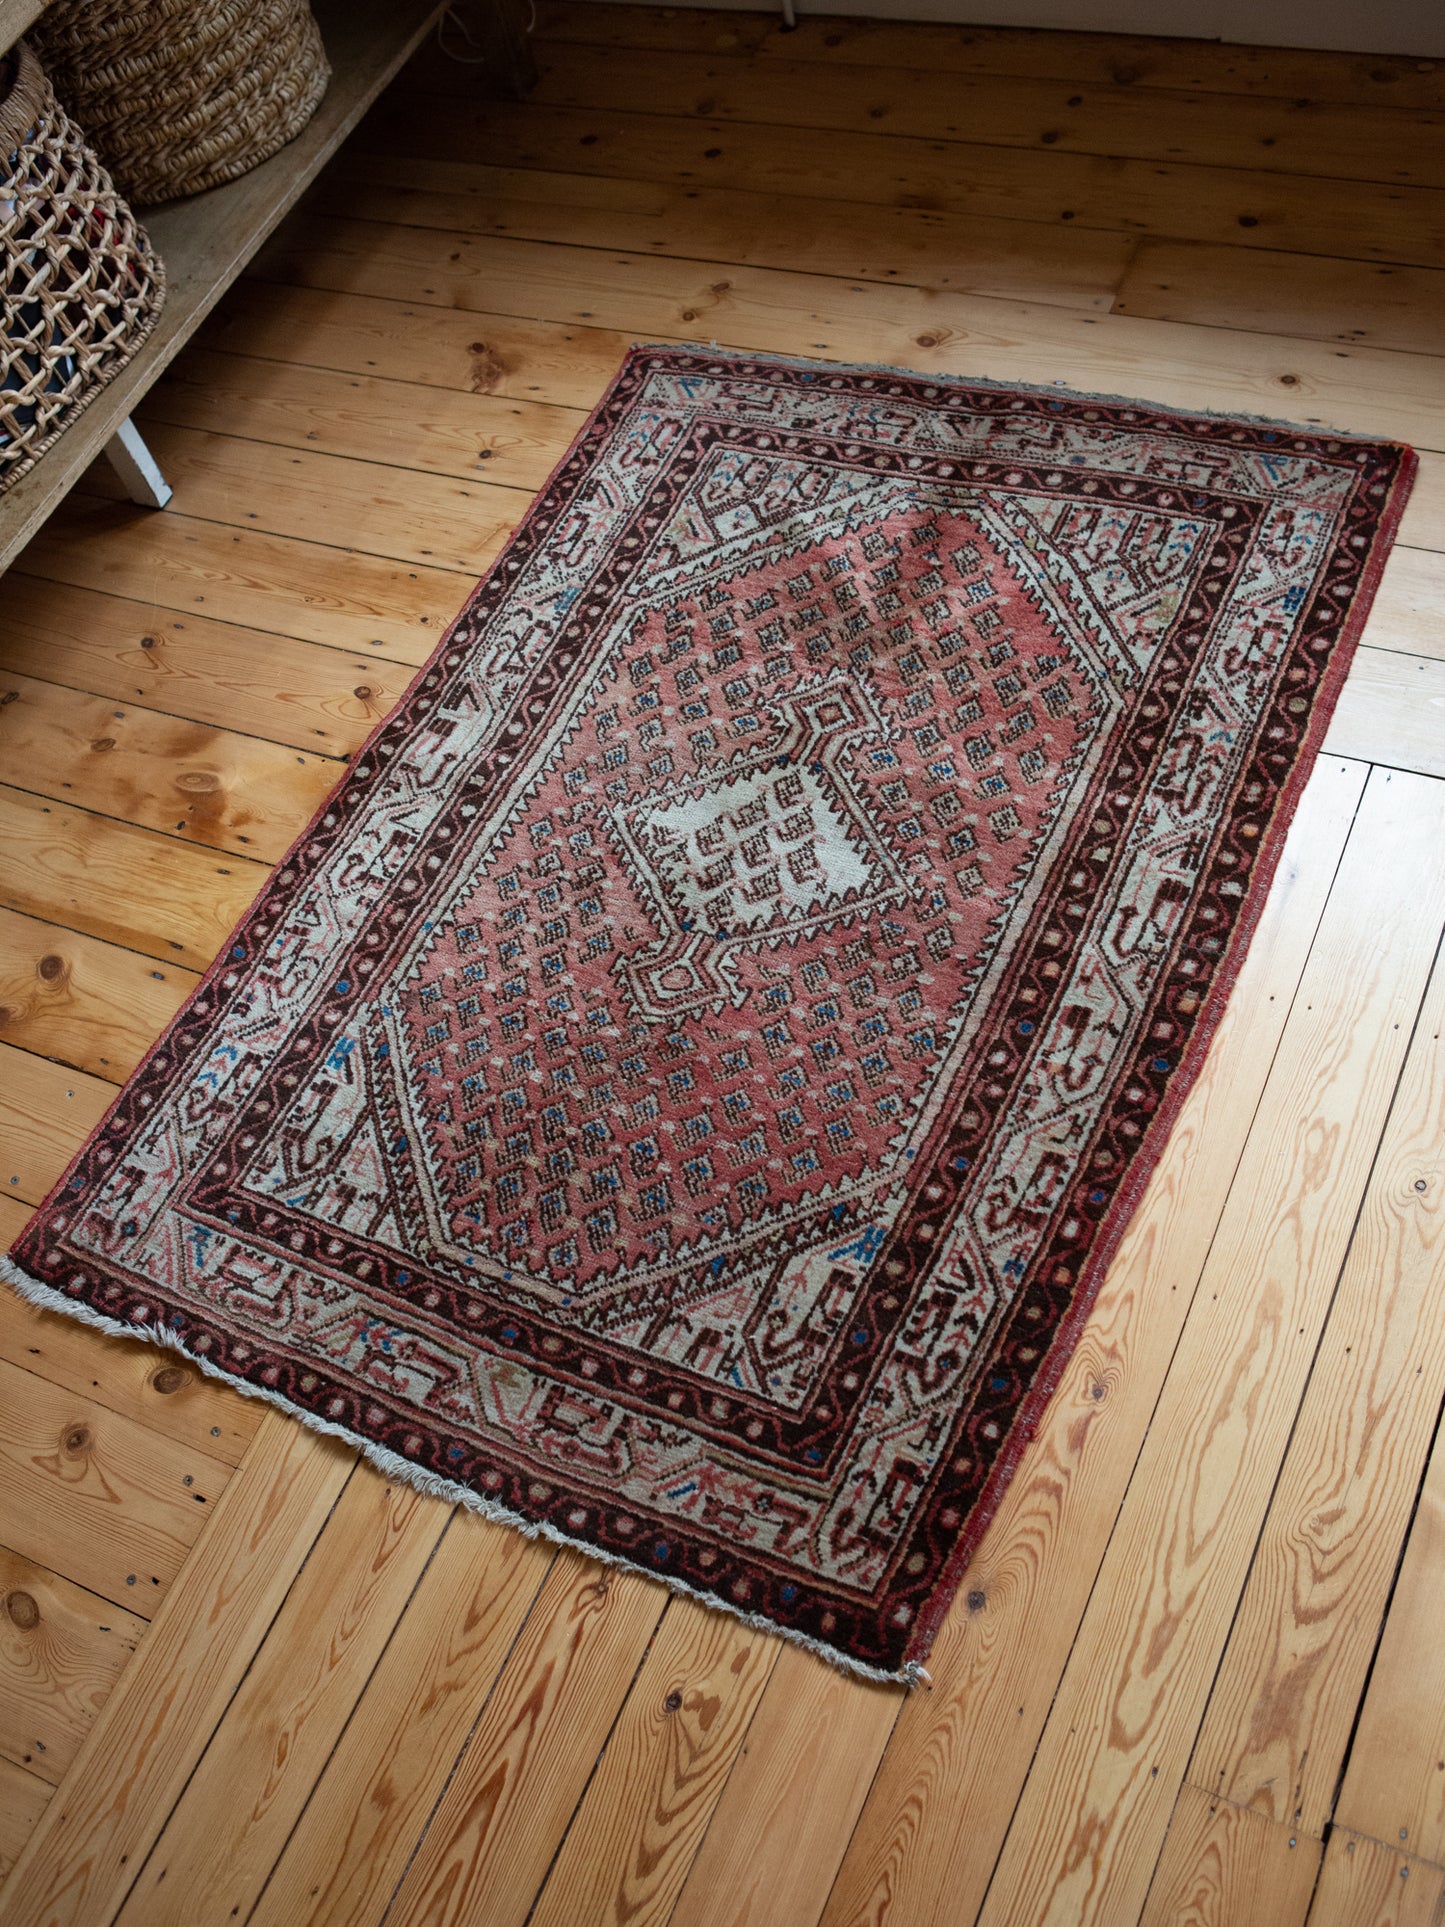 Beau tapis persan vintage | Patine et couleurs merveilleuses | 155 x 110 cm (n°9)